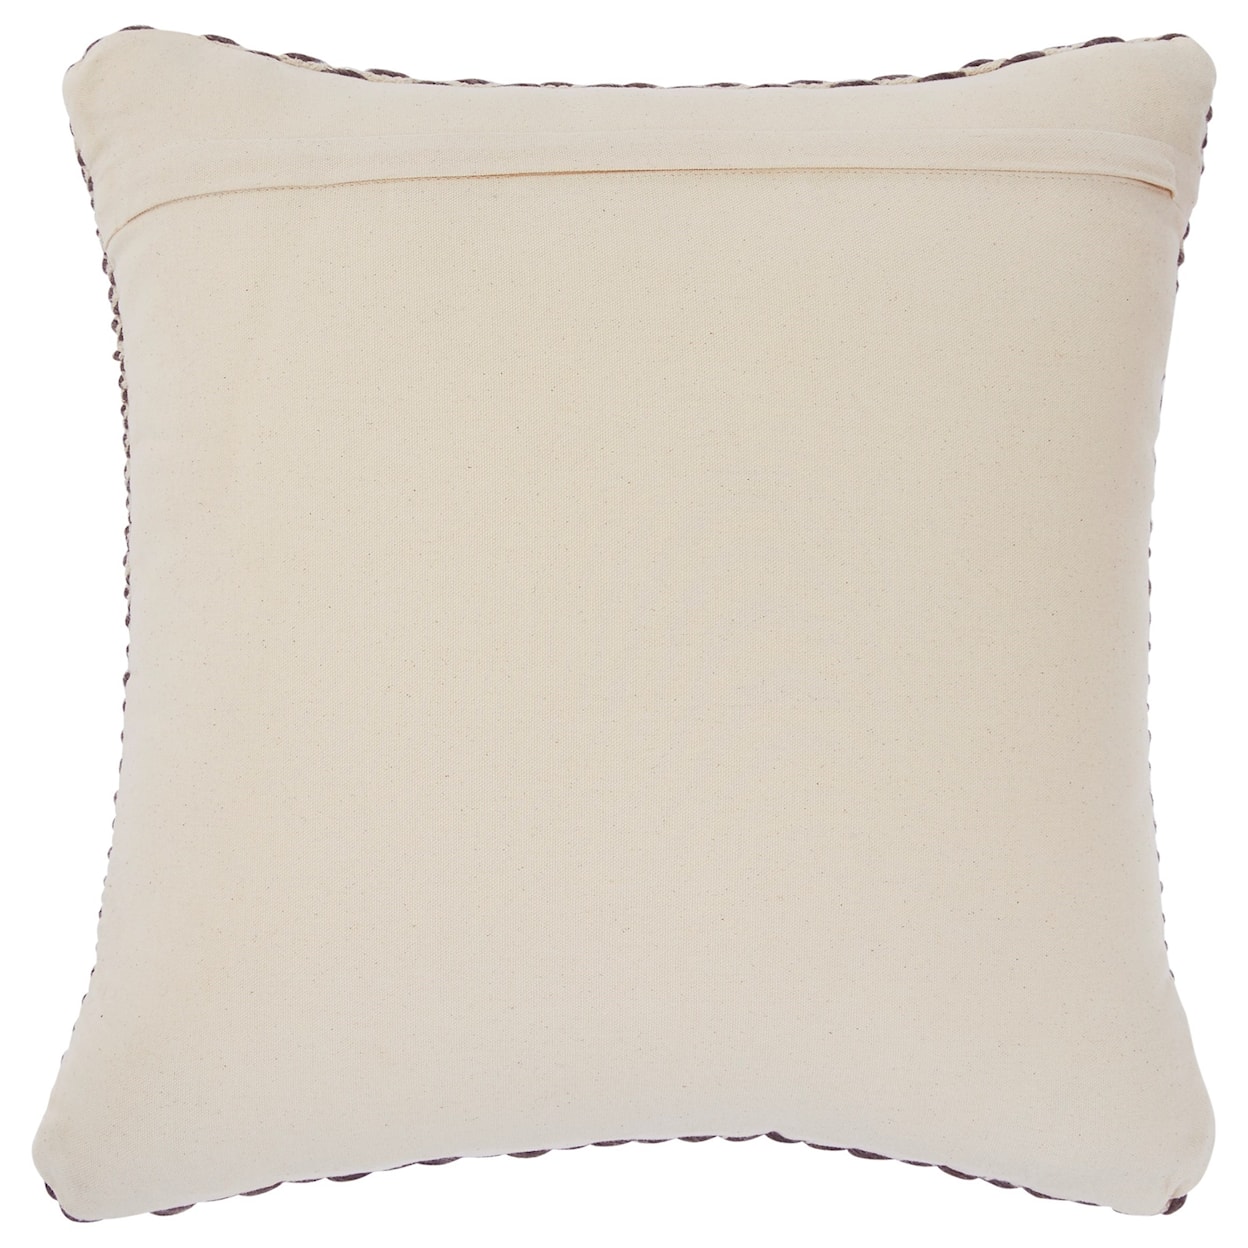 Ashley Signature Design Pillows Bertin Gray/Natural Pillow